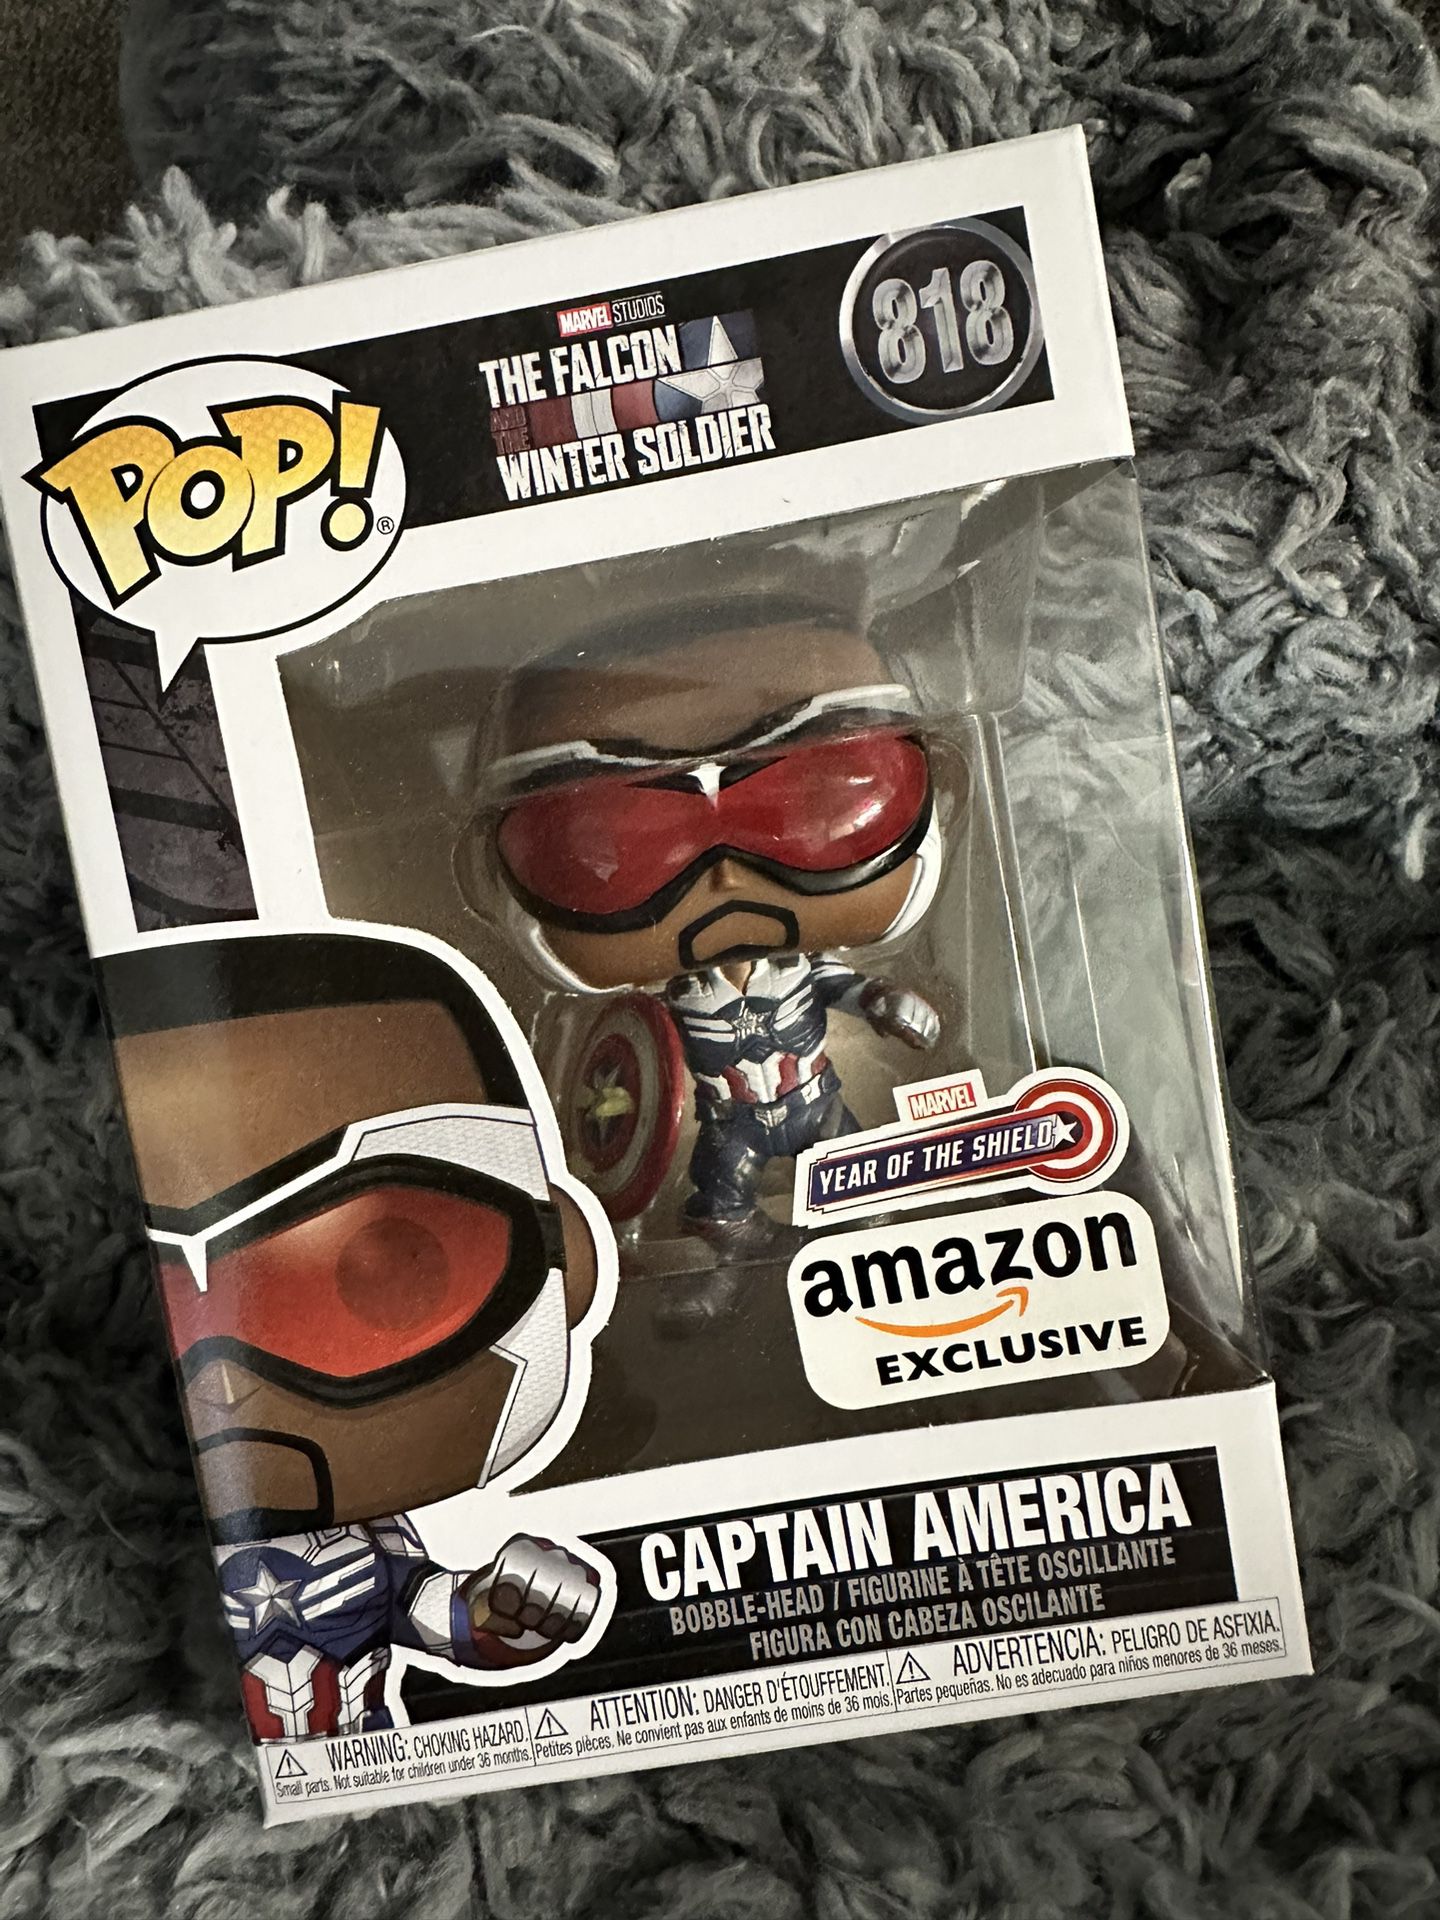 Captain America Funko